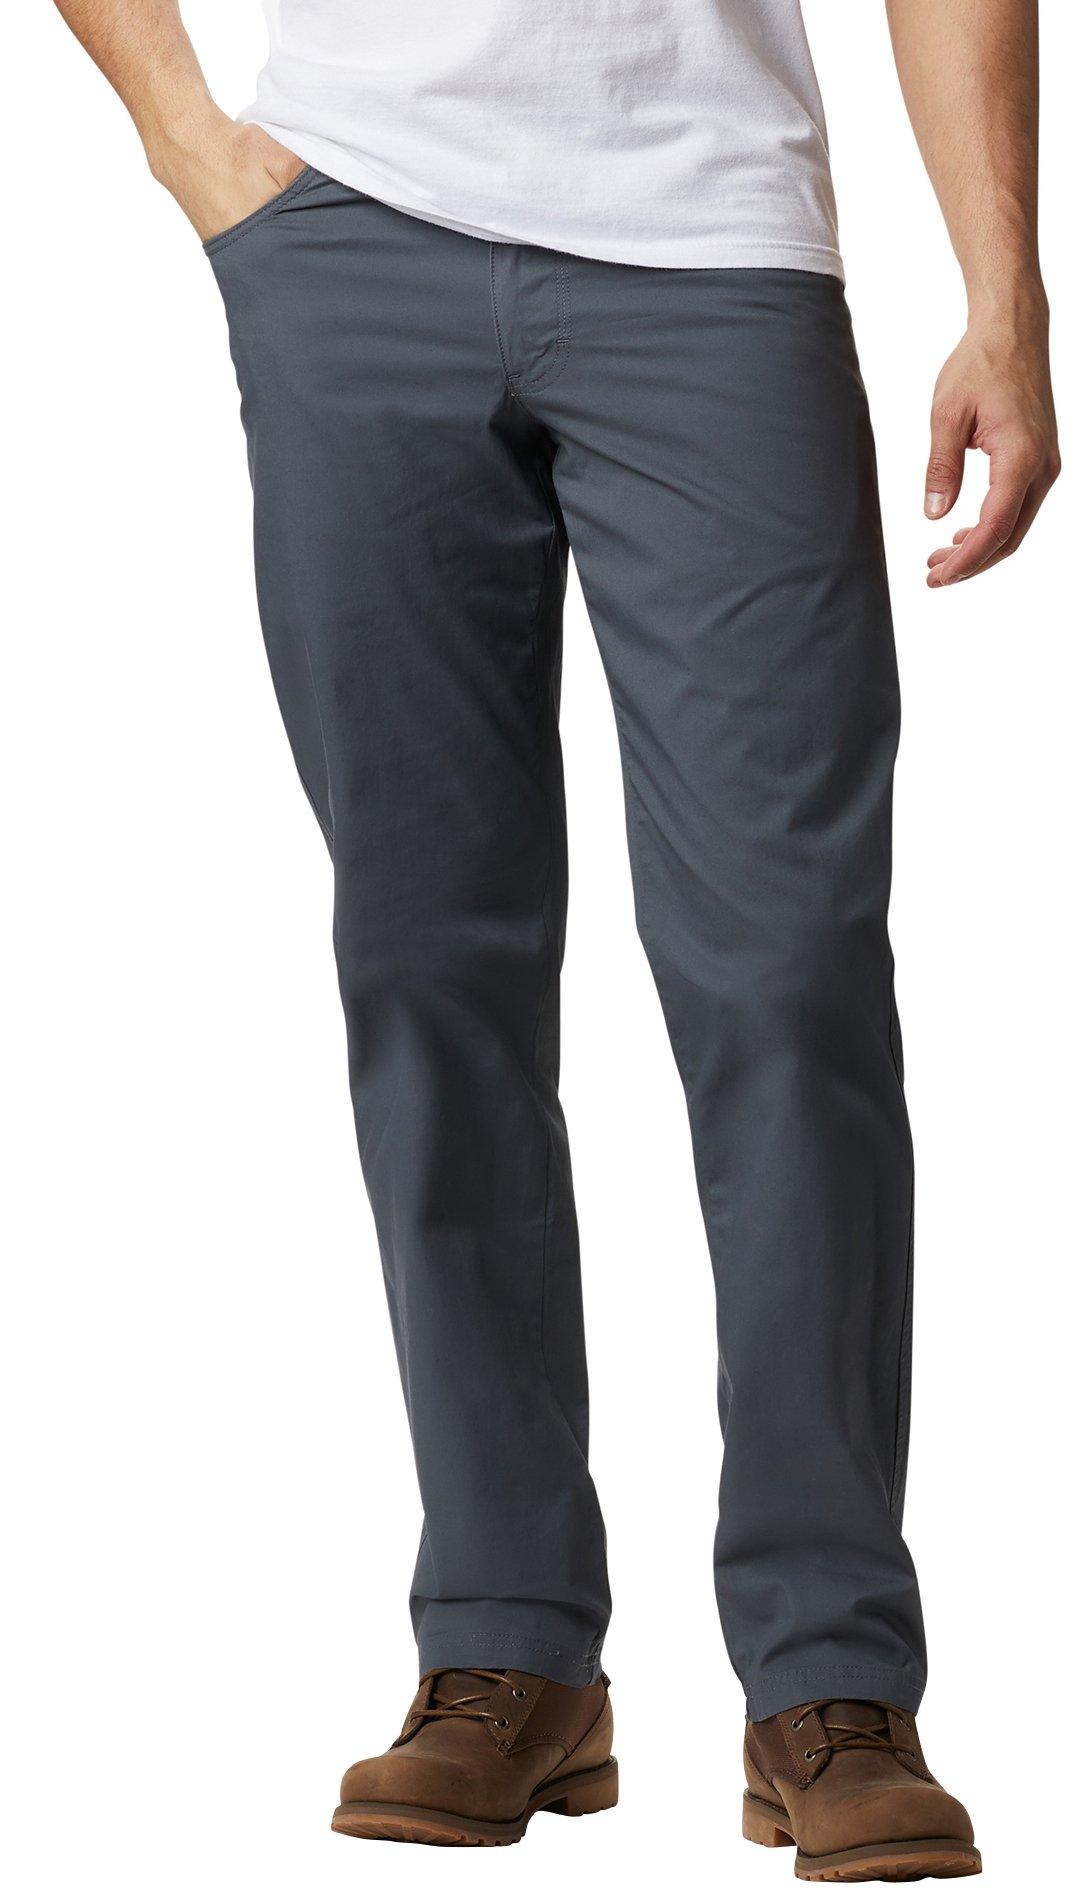 Reel Legends Mens Mackerel Convertible Quick Dry Pants Grey X-Large 32L